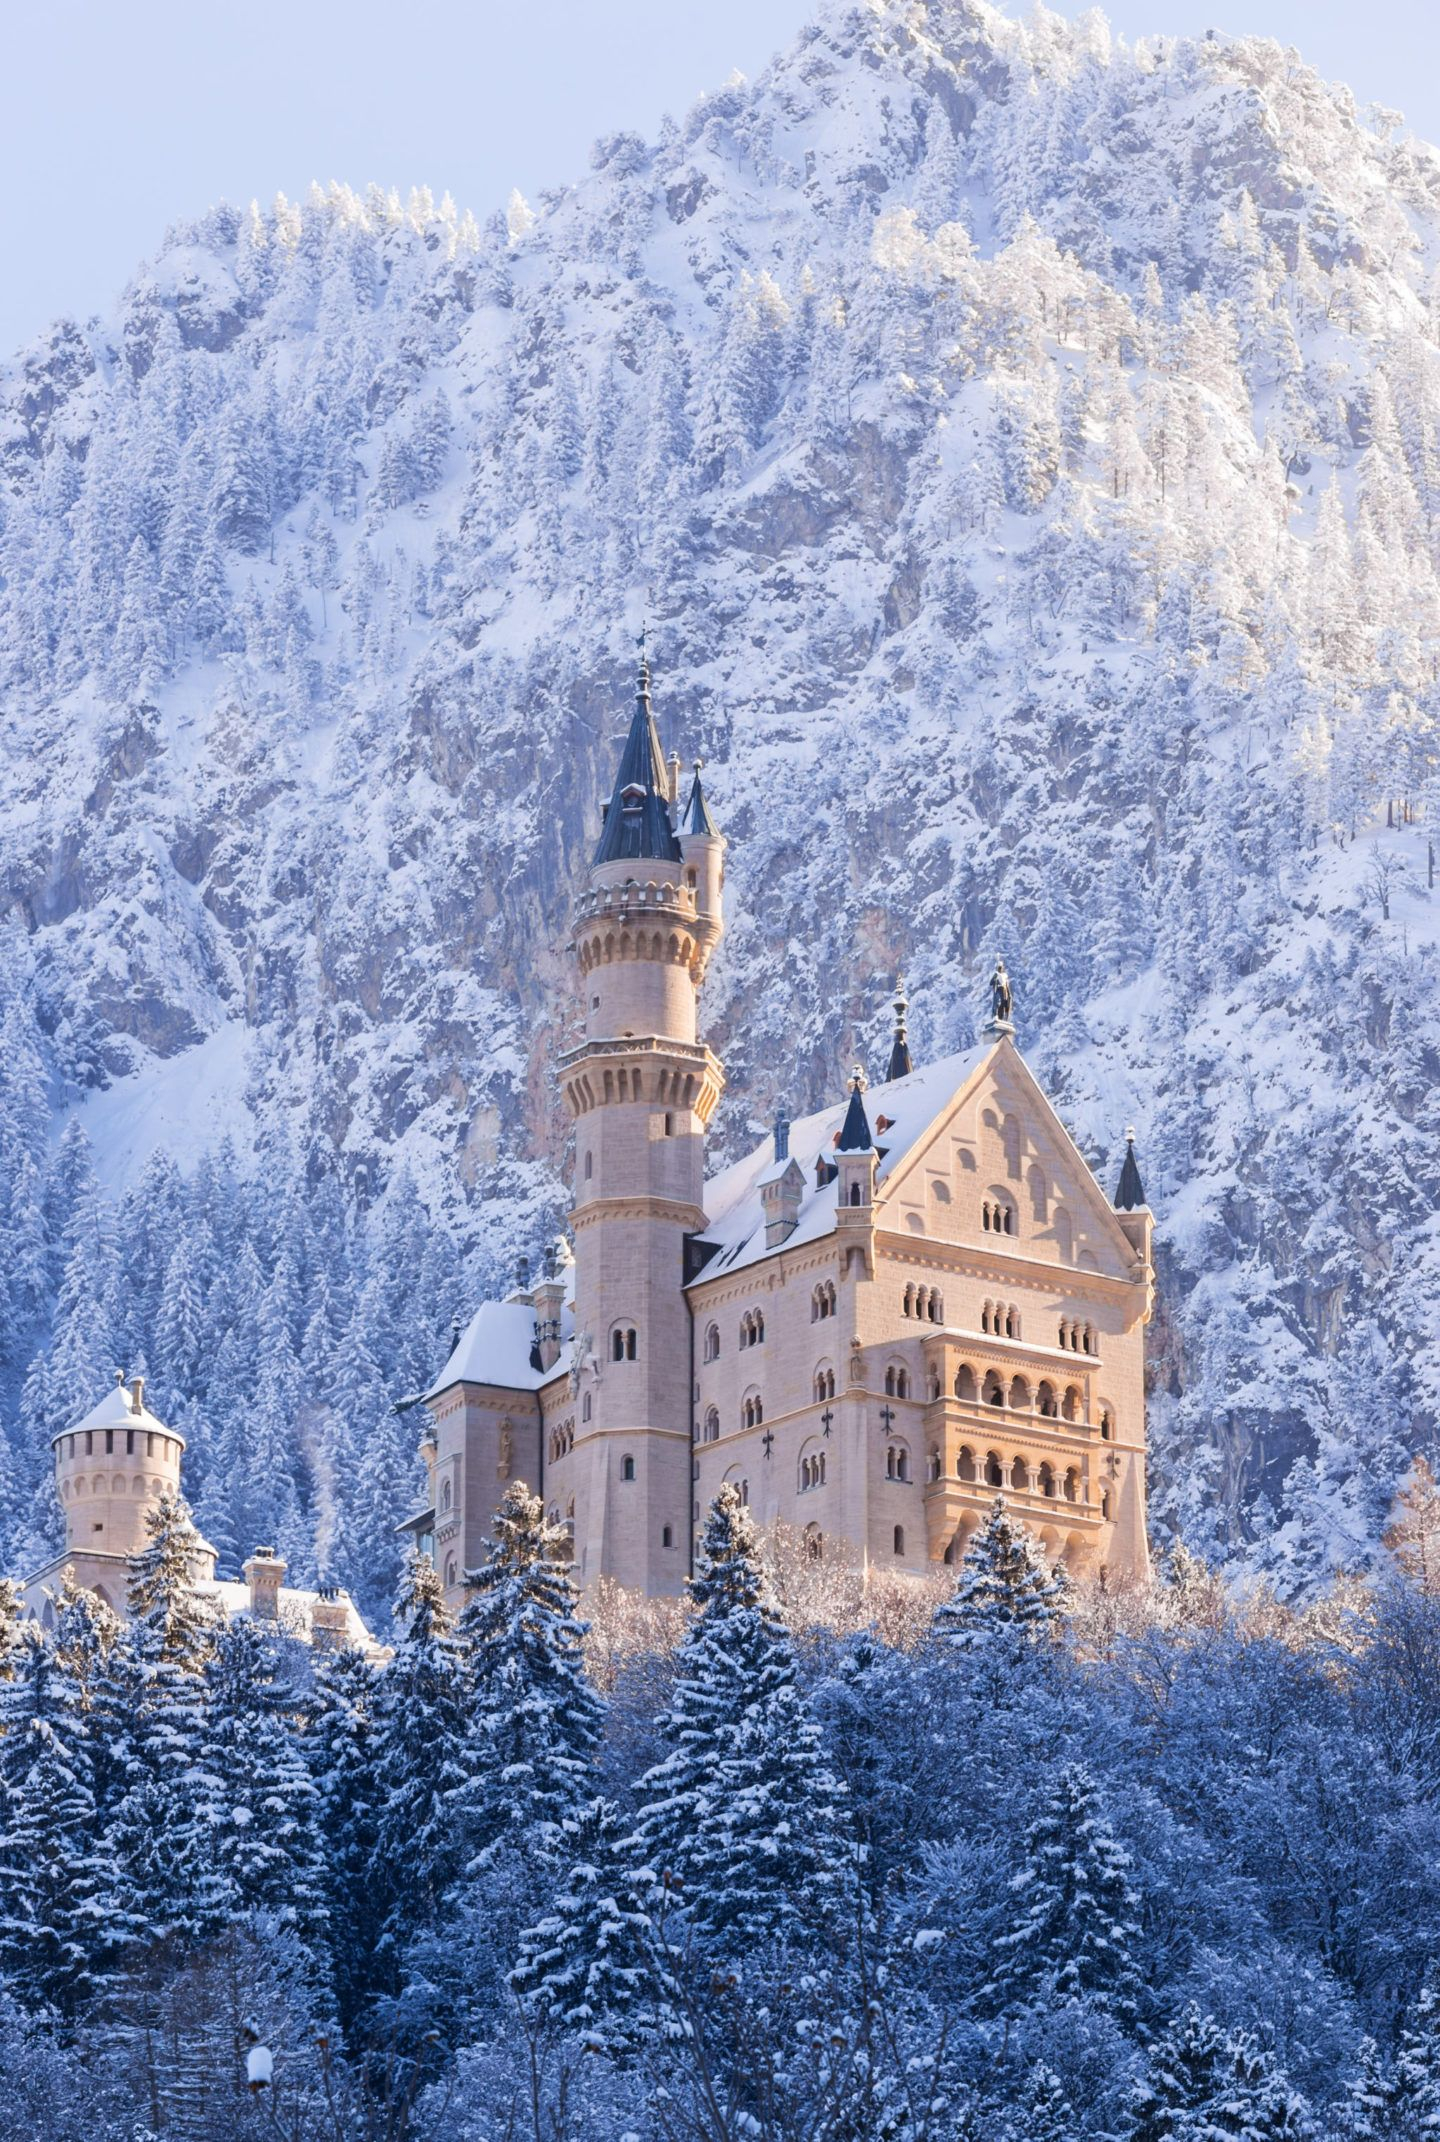 1440x2142 Neuschwanstein Castle in Winter #Neuschwanstein | Castle aesthetic, Neuschwanstein castle, Beautiful castles